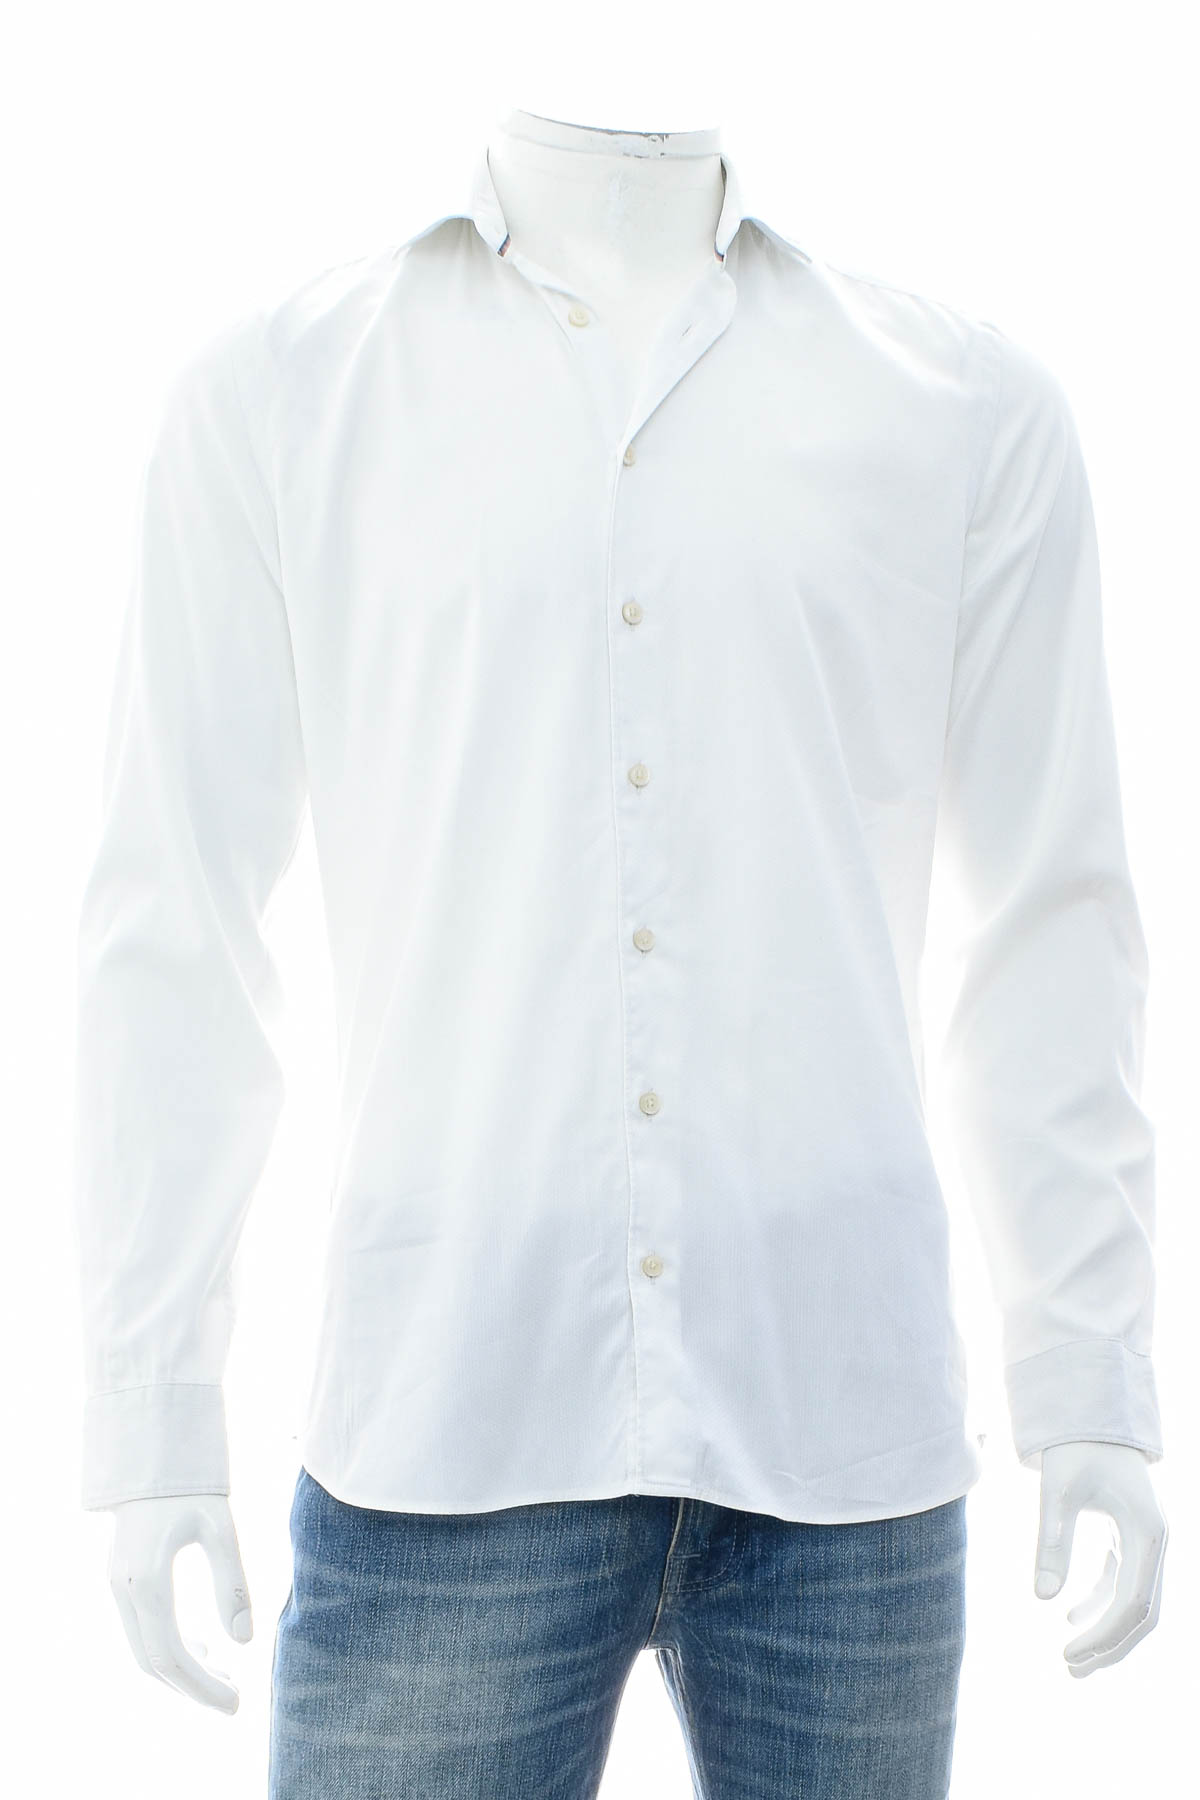 Ανδρικό πουκάμισο - Olymp - 0